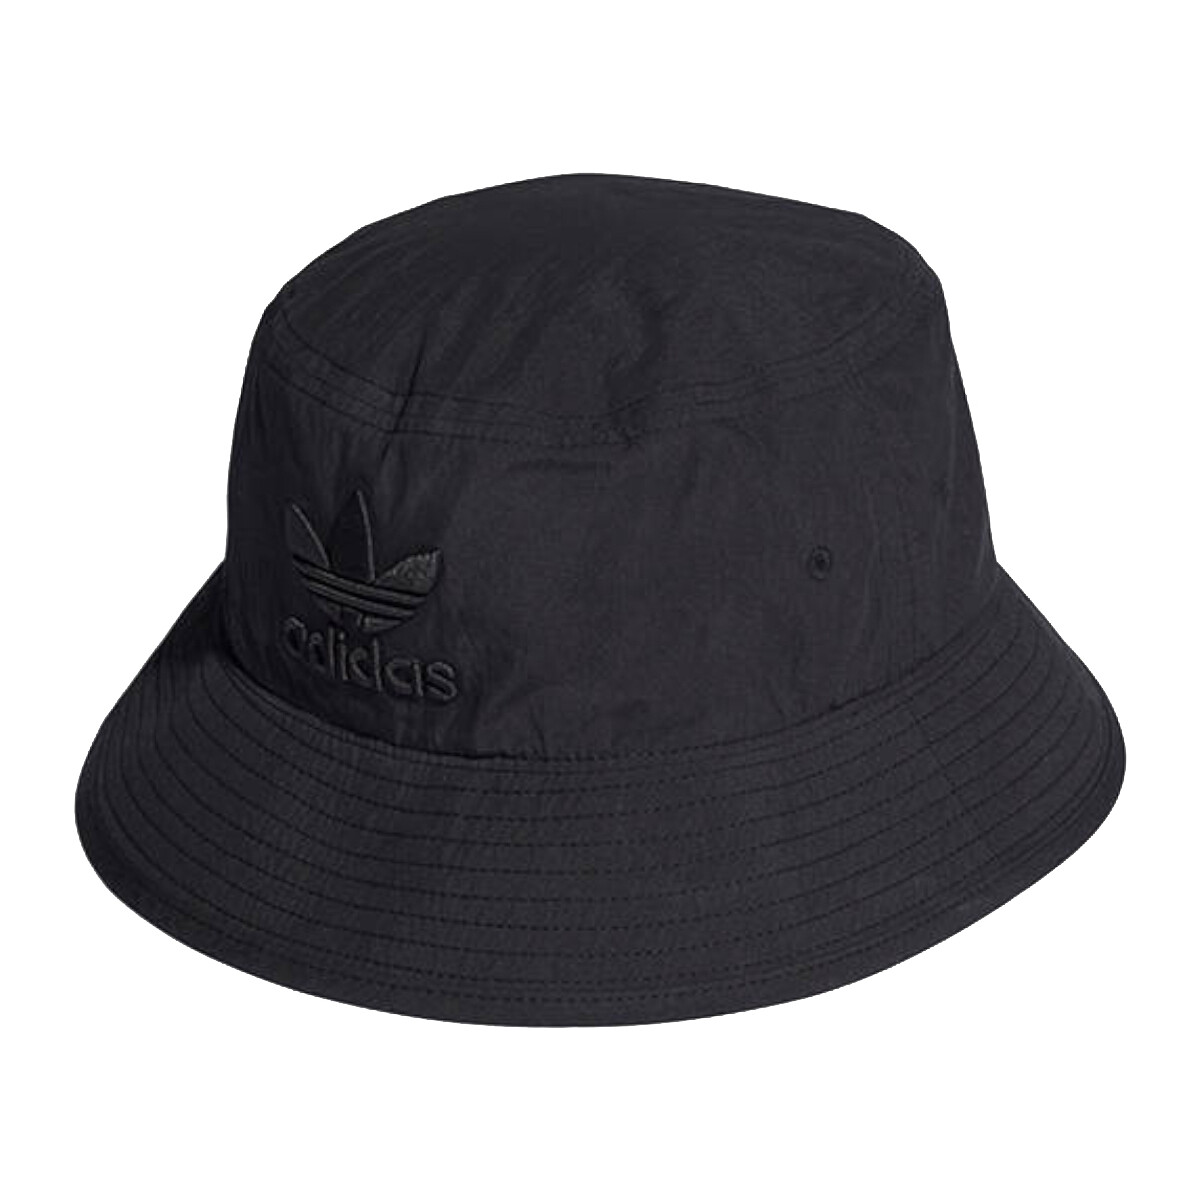 Acessórios Chapéu adidas Originals adidas Adicolor Archive Bucket Hat Preto